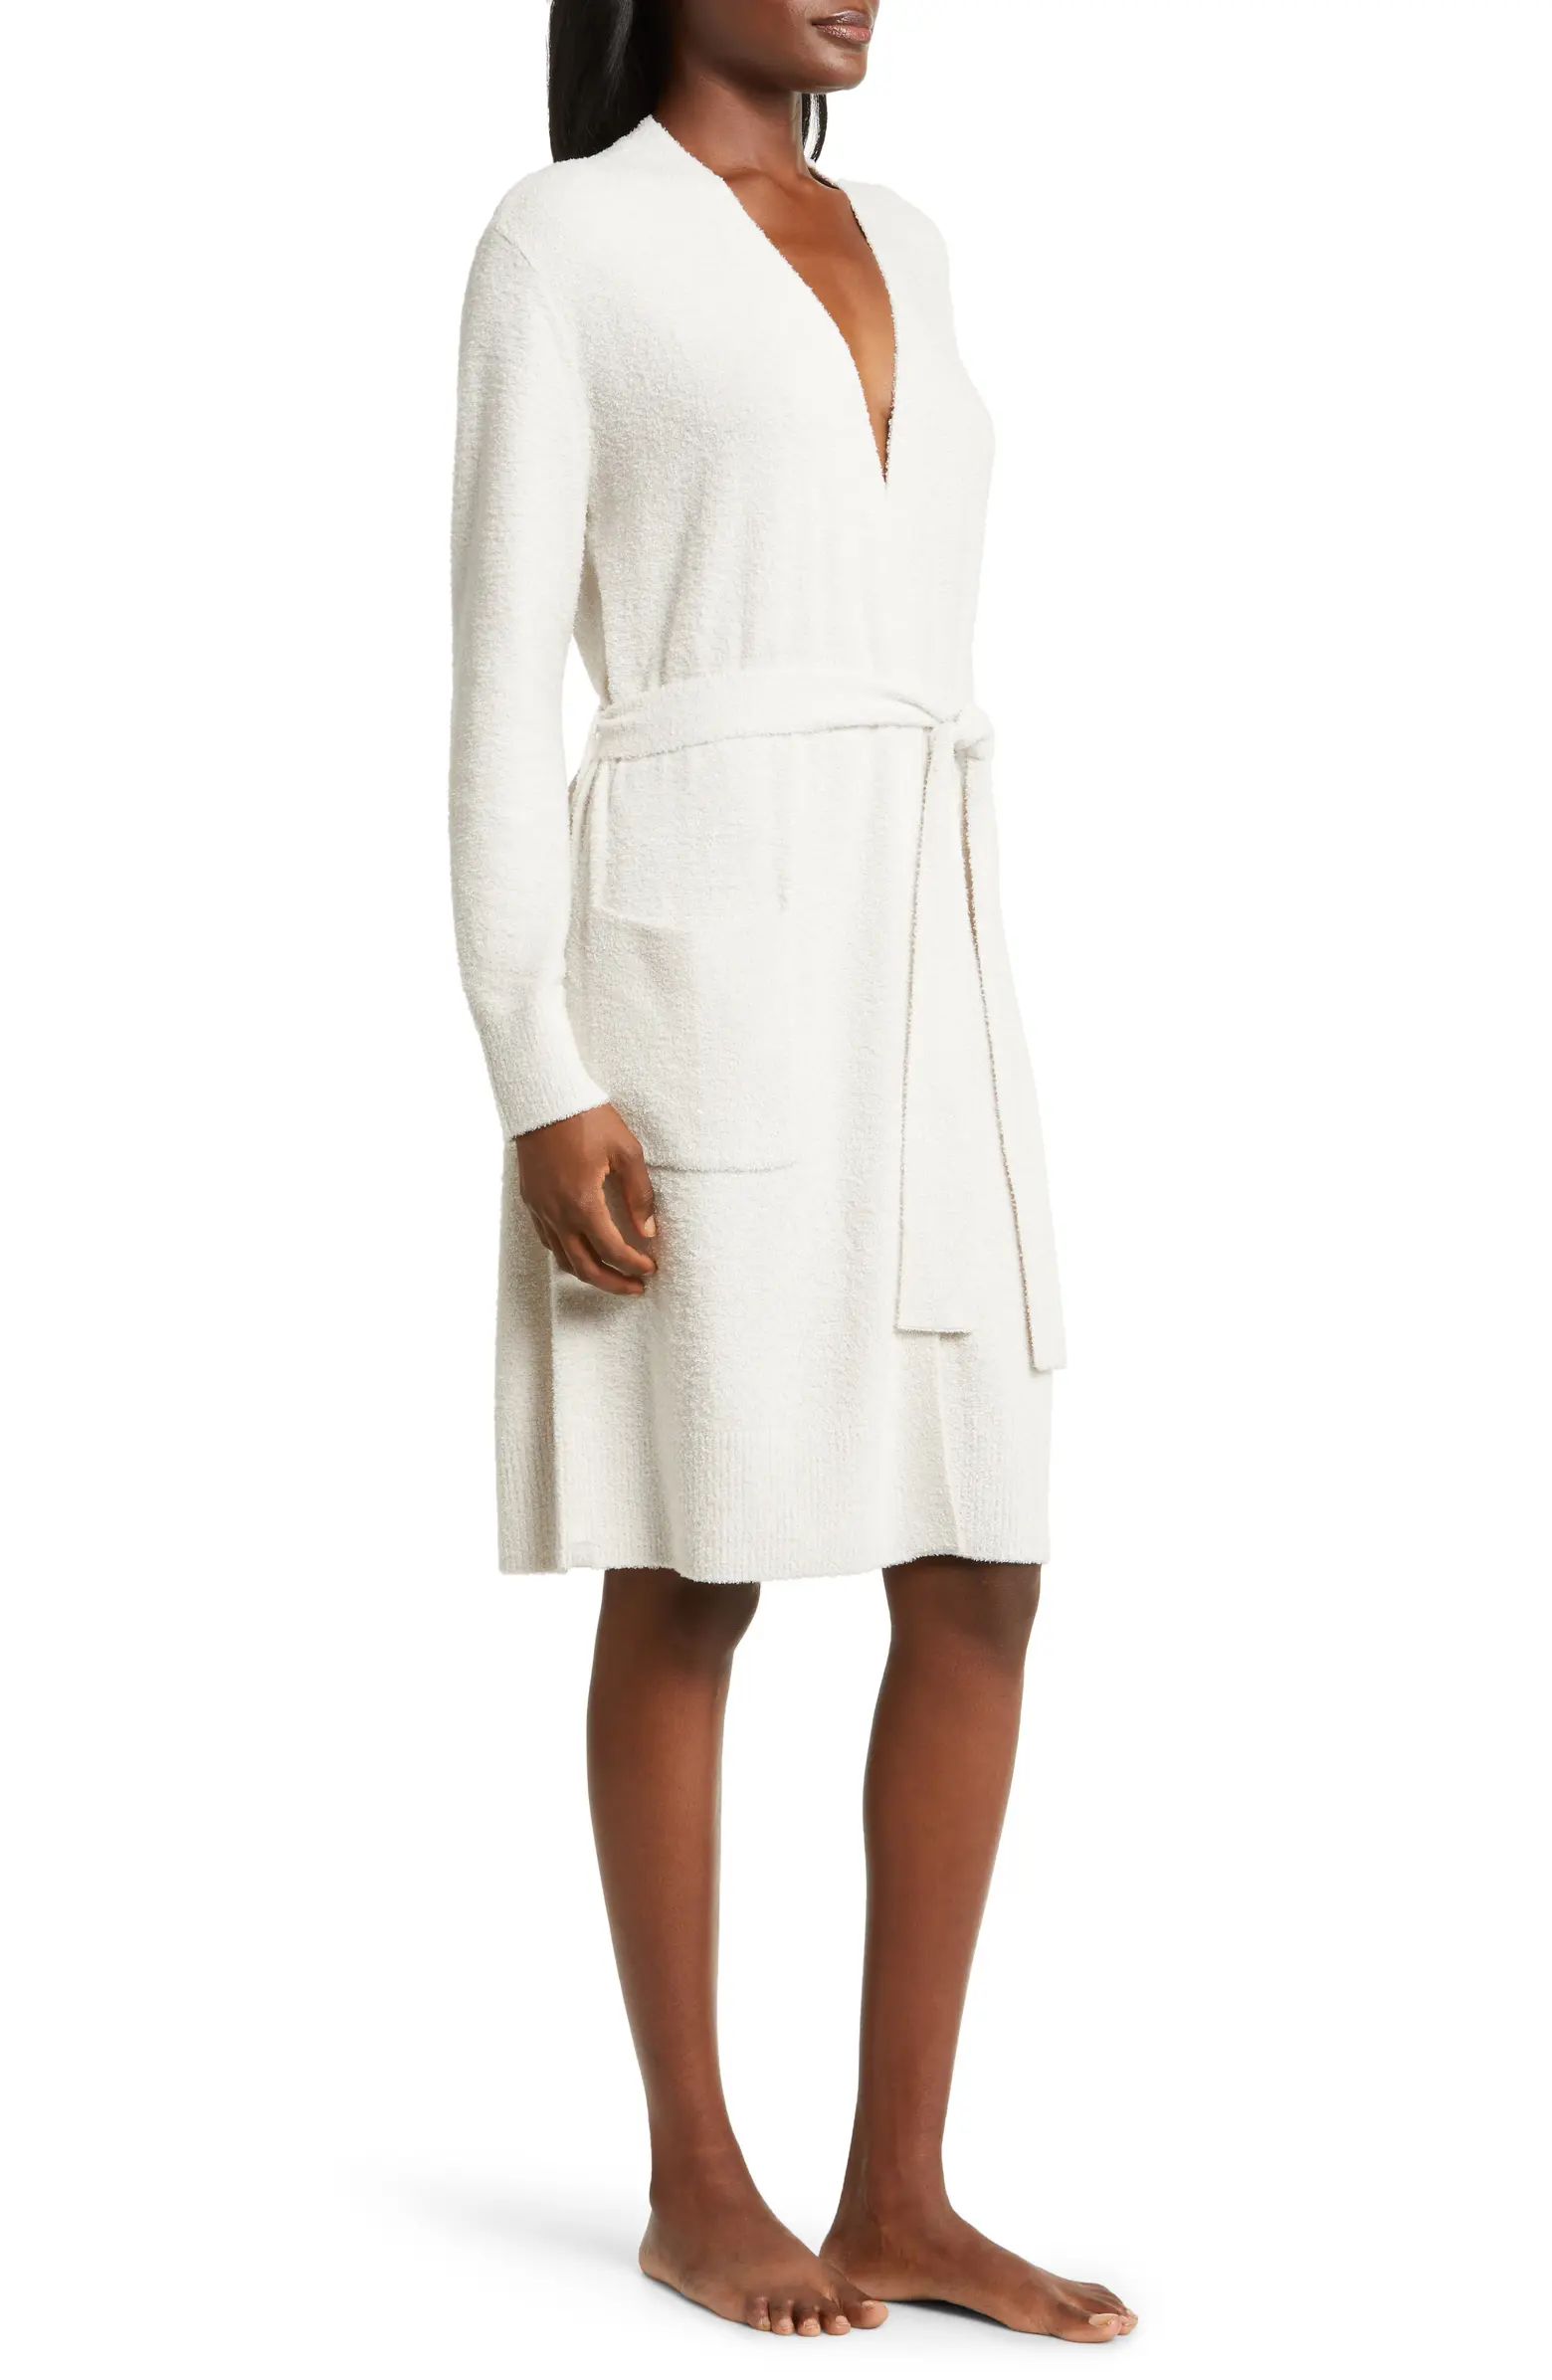 CozyChic™ Lite® Short Robe | Nordstrom